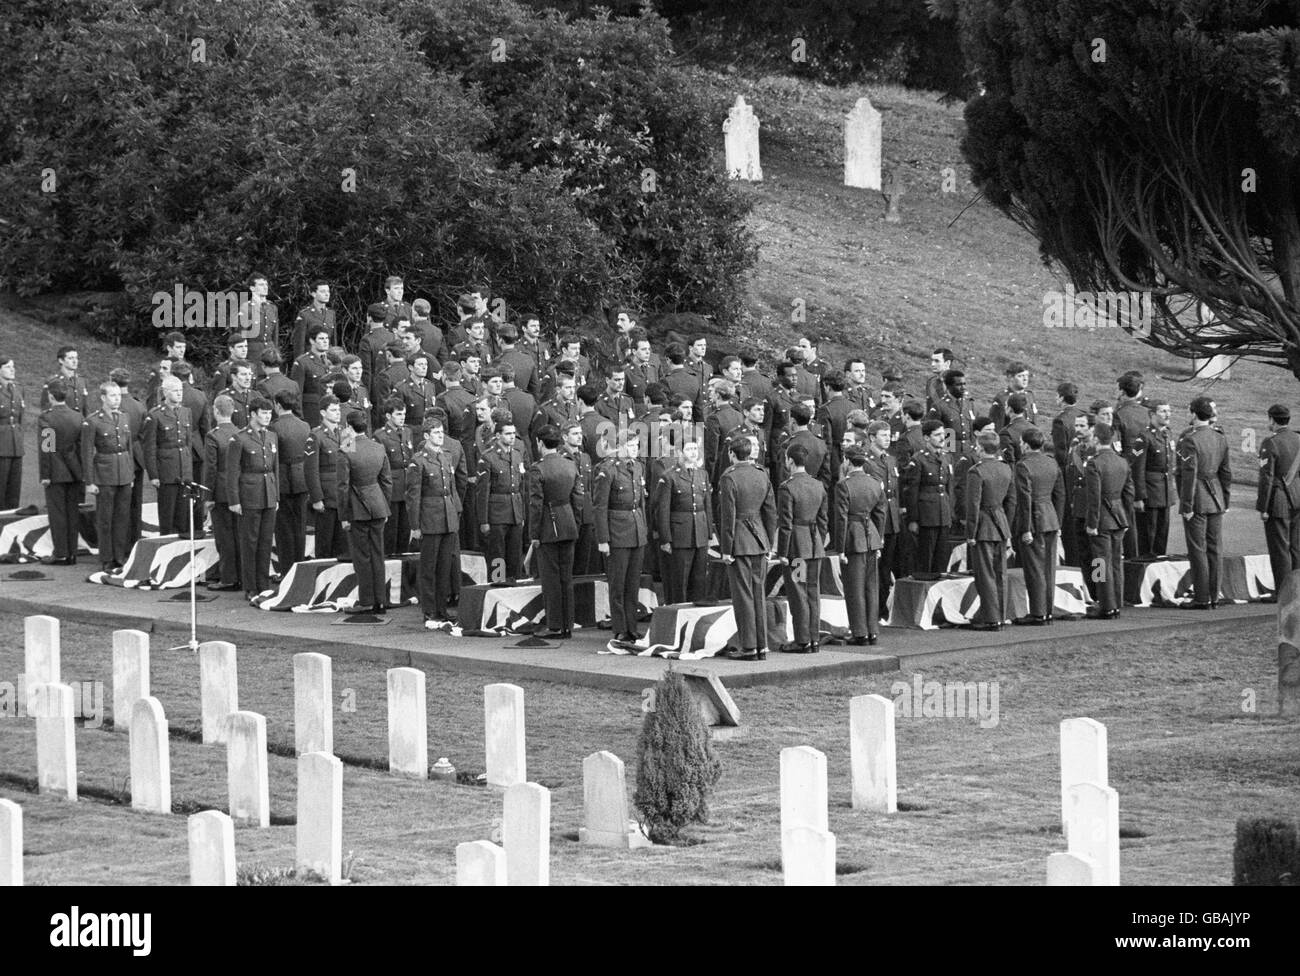 Fallschirmjäger stehen an den fahnendrapierten Särgen, bereit, sie in die Gräber zu senken, bei der Beerdigung mit vollen militärischen Ehren auf dem Militärfriedhof, Aldershot, Von 16 Soldaten des 2. Und 3. Bataillons des Fallschirmregiments, die bei einigen der blutigsten Kämpfe des Falklandkrieges ums Leben kamen. Stockfoto